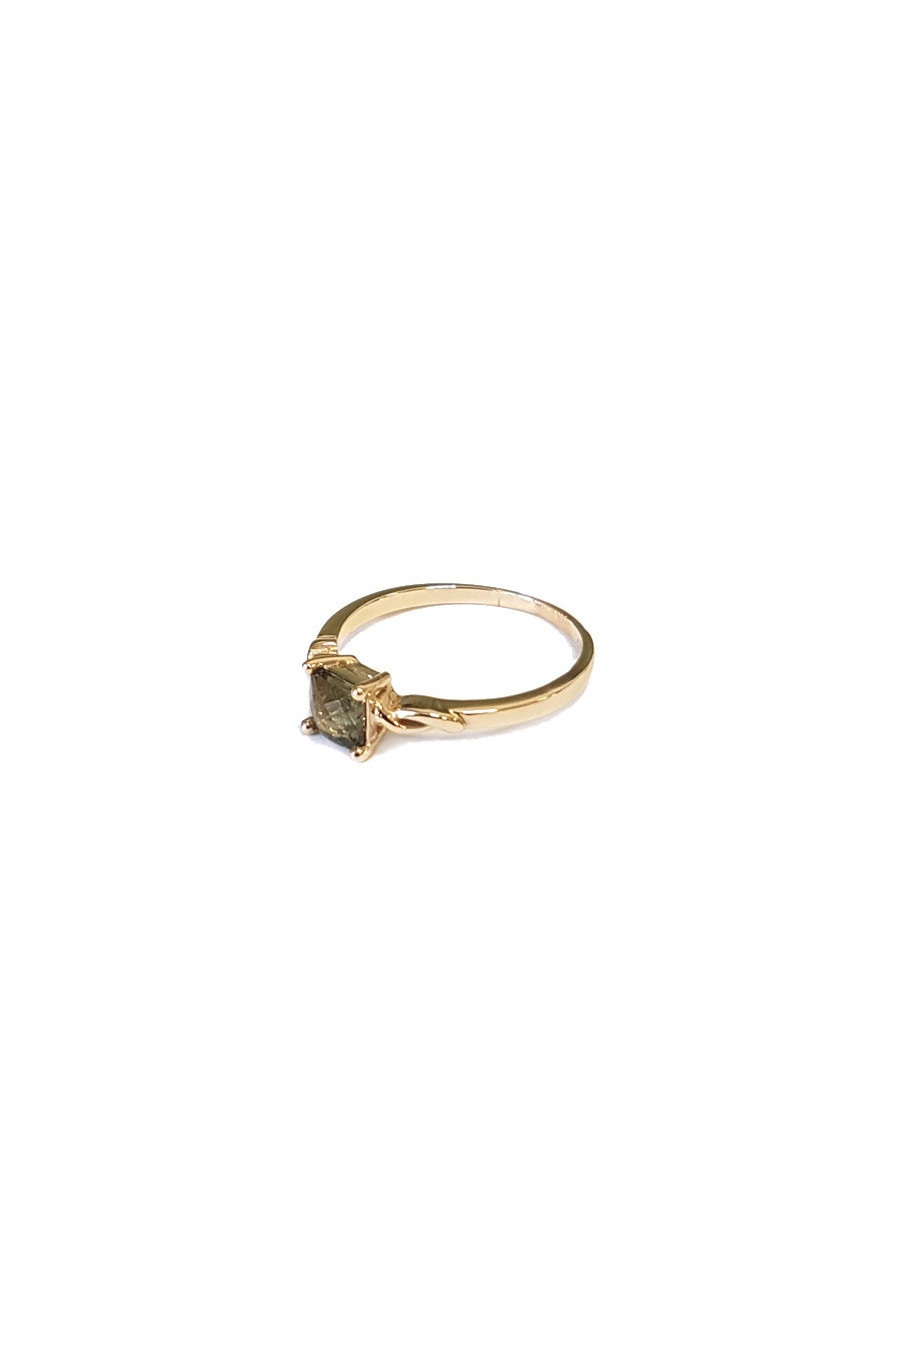 Gold ring, moldavite